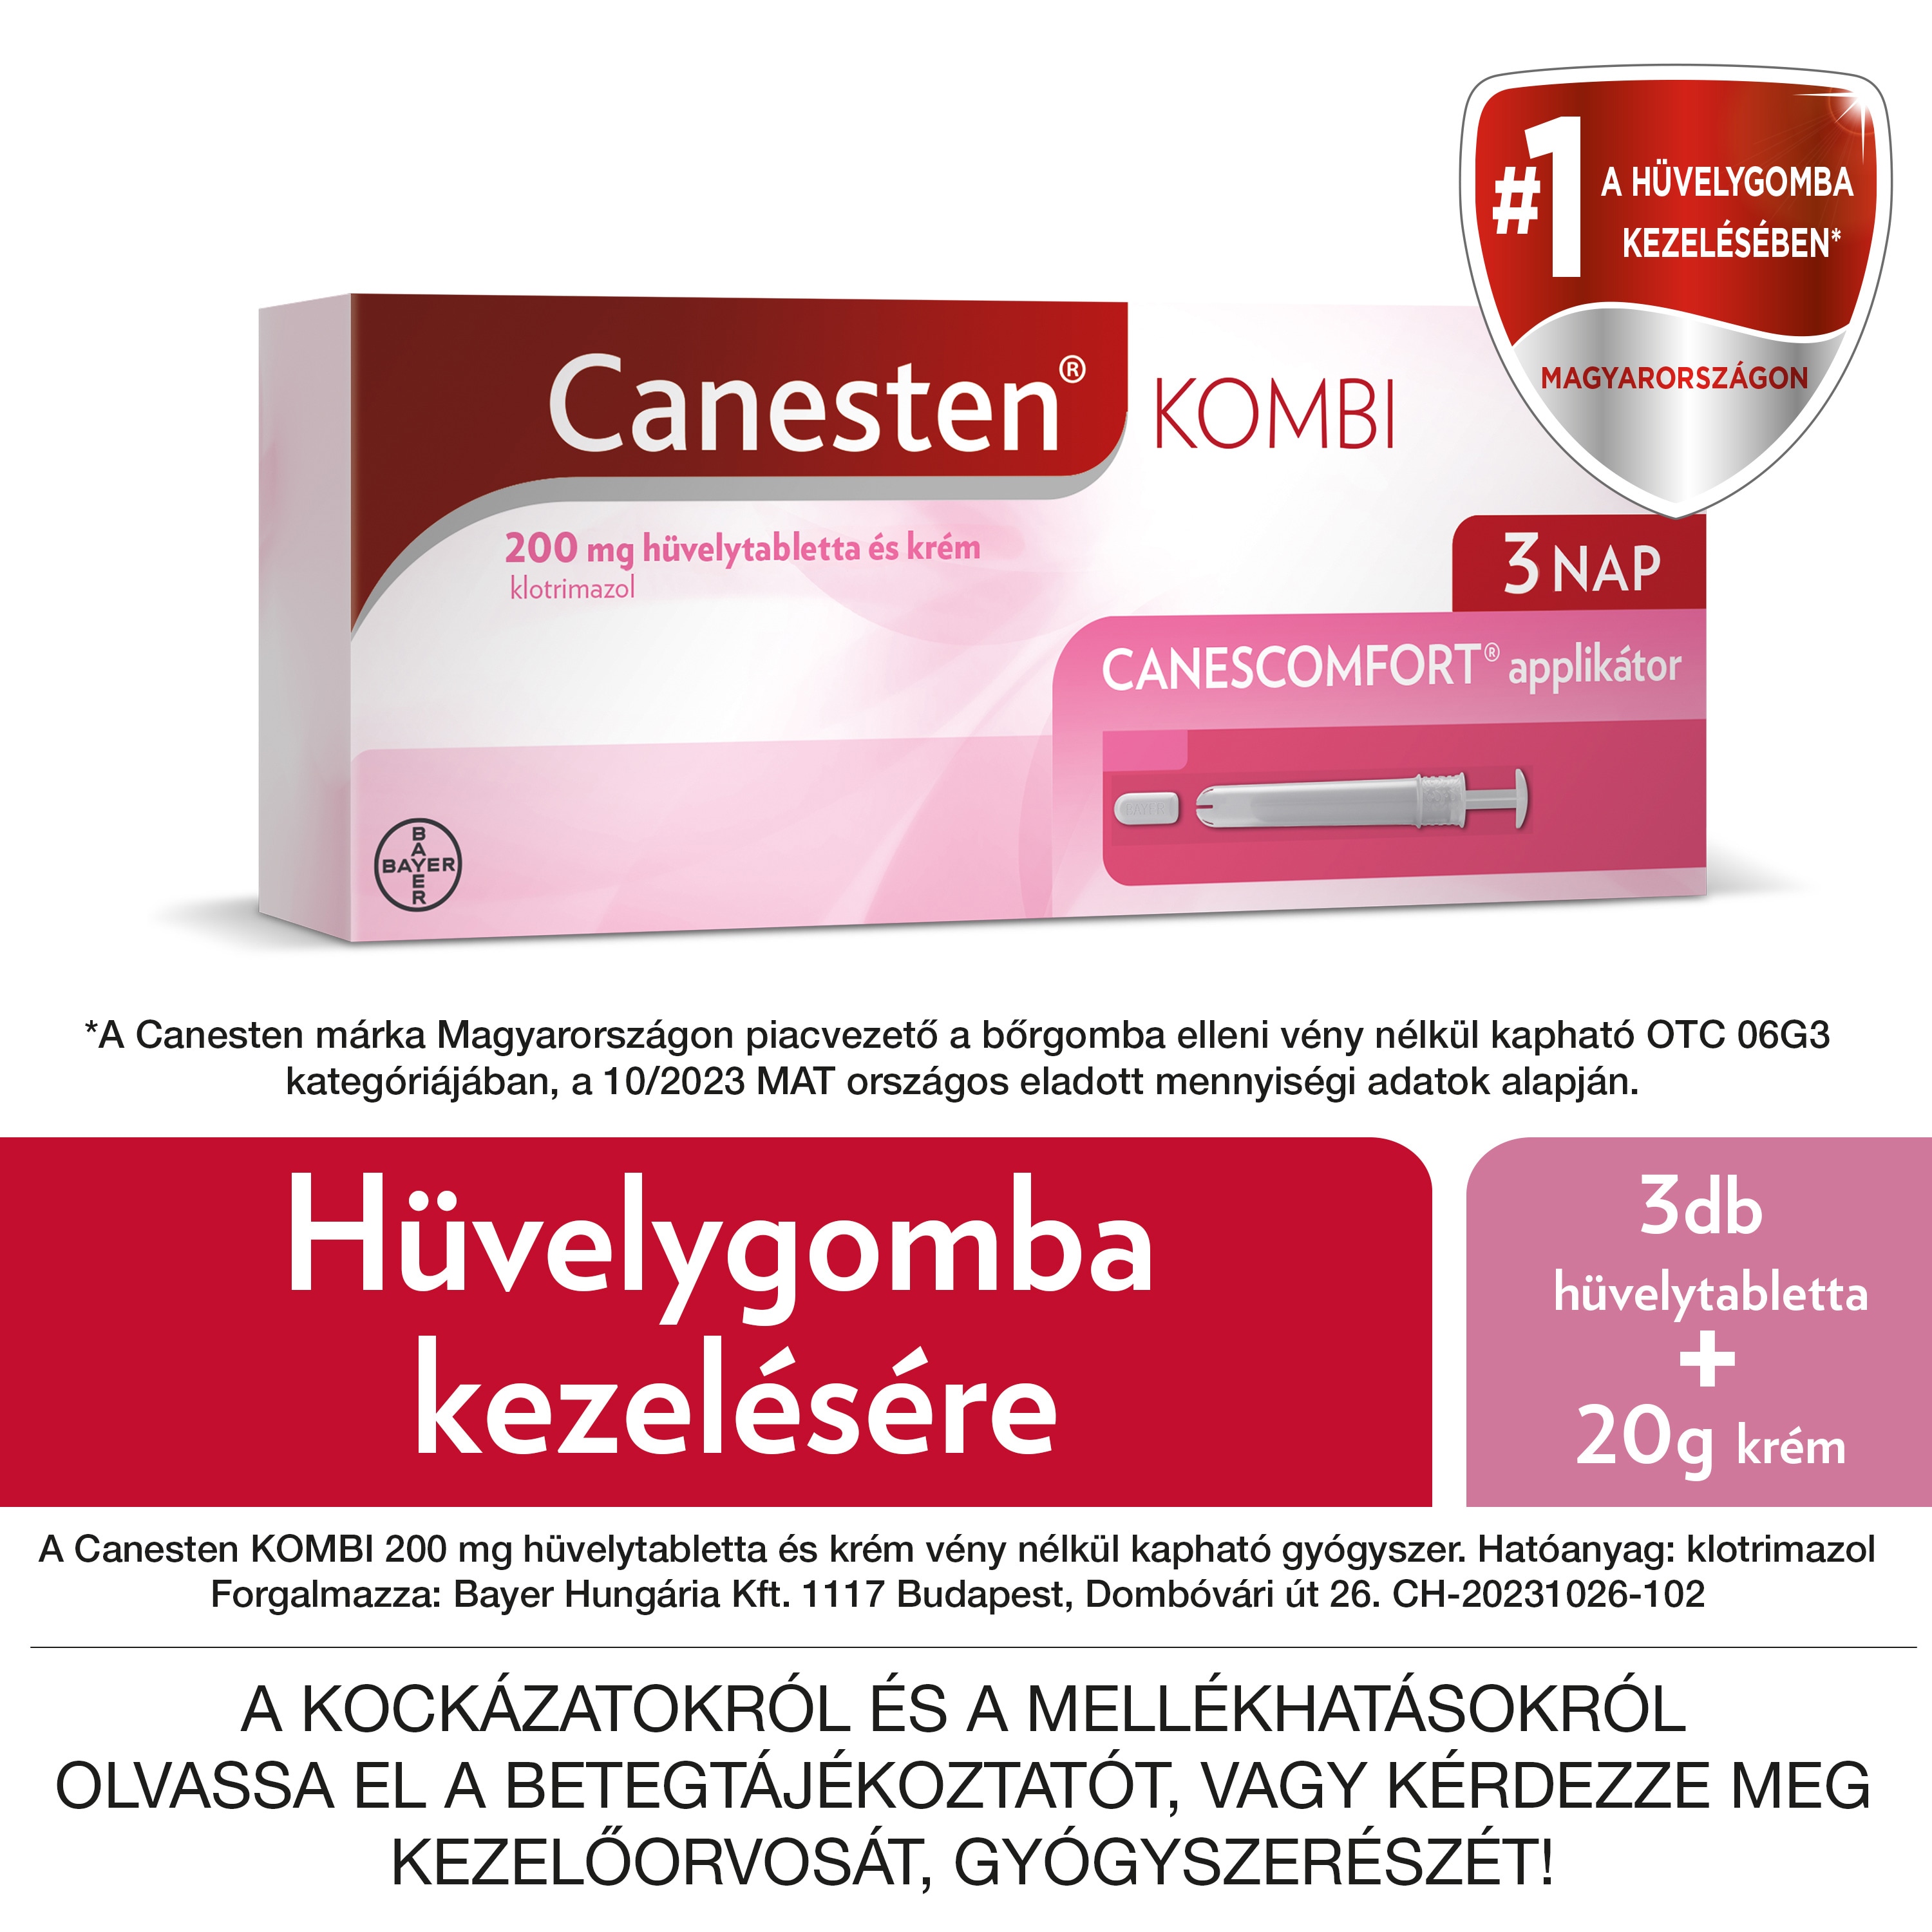 Canesten KOMBI 200 mg hüvelytabletta és krémCanesten KOMBI 200 mg hüvelytabletta és krém